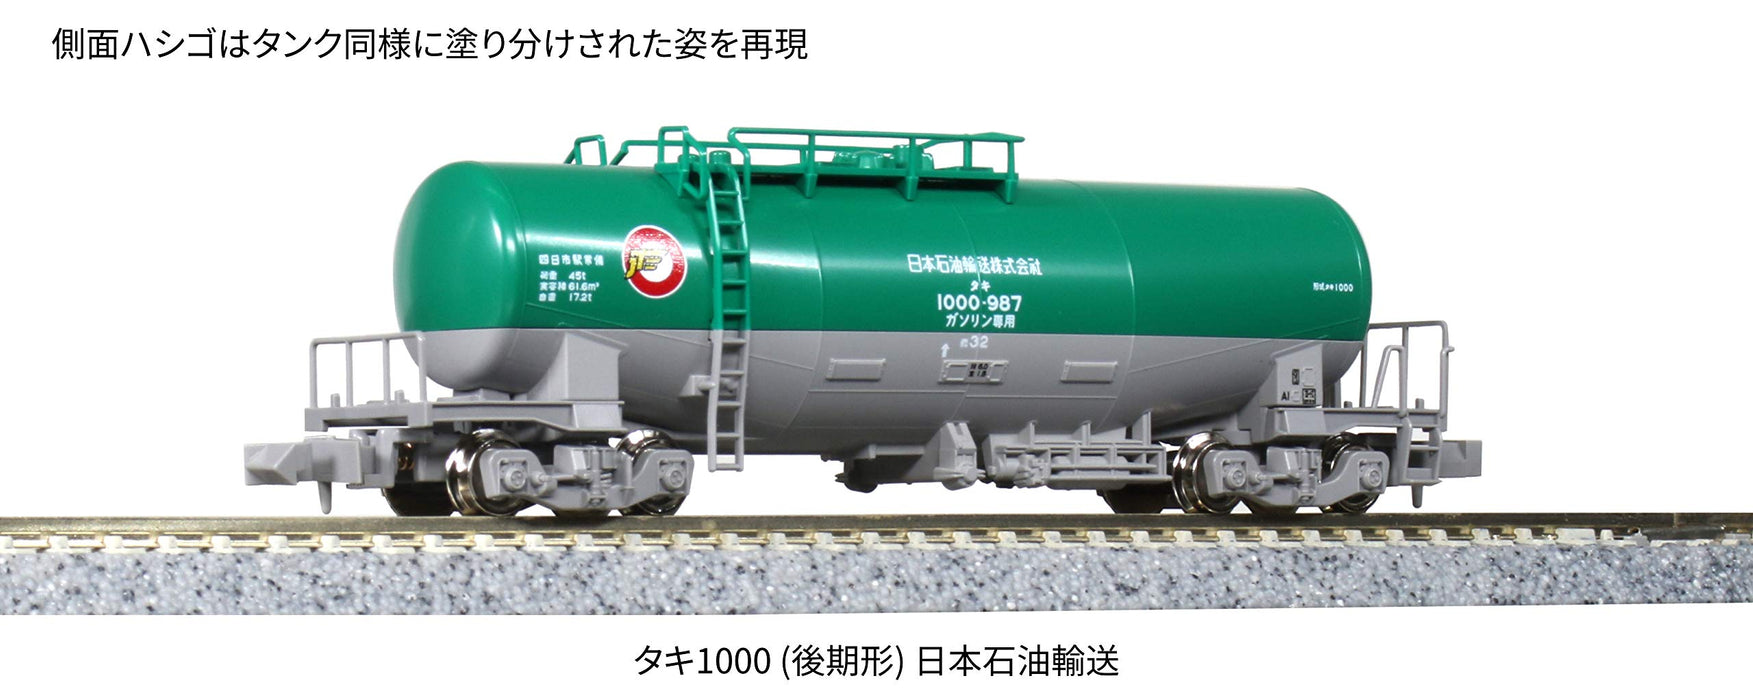 Modèle de voiture de fret ferroviaire Kato N Gauge Taki 1000 fin 8081 Nippon Oil Transport